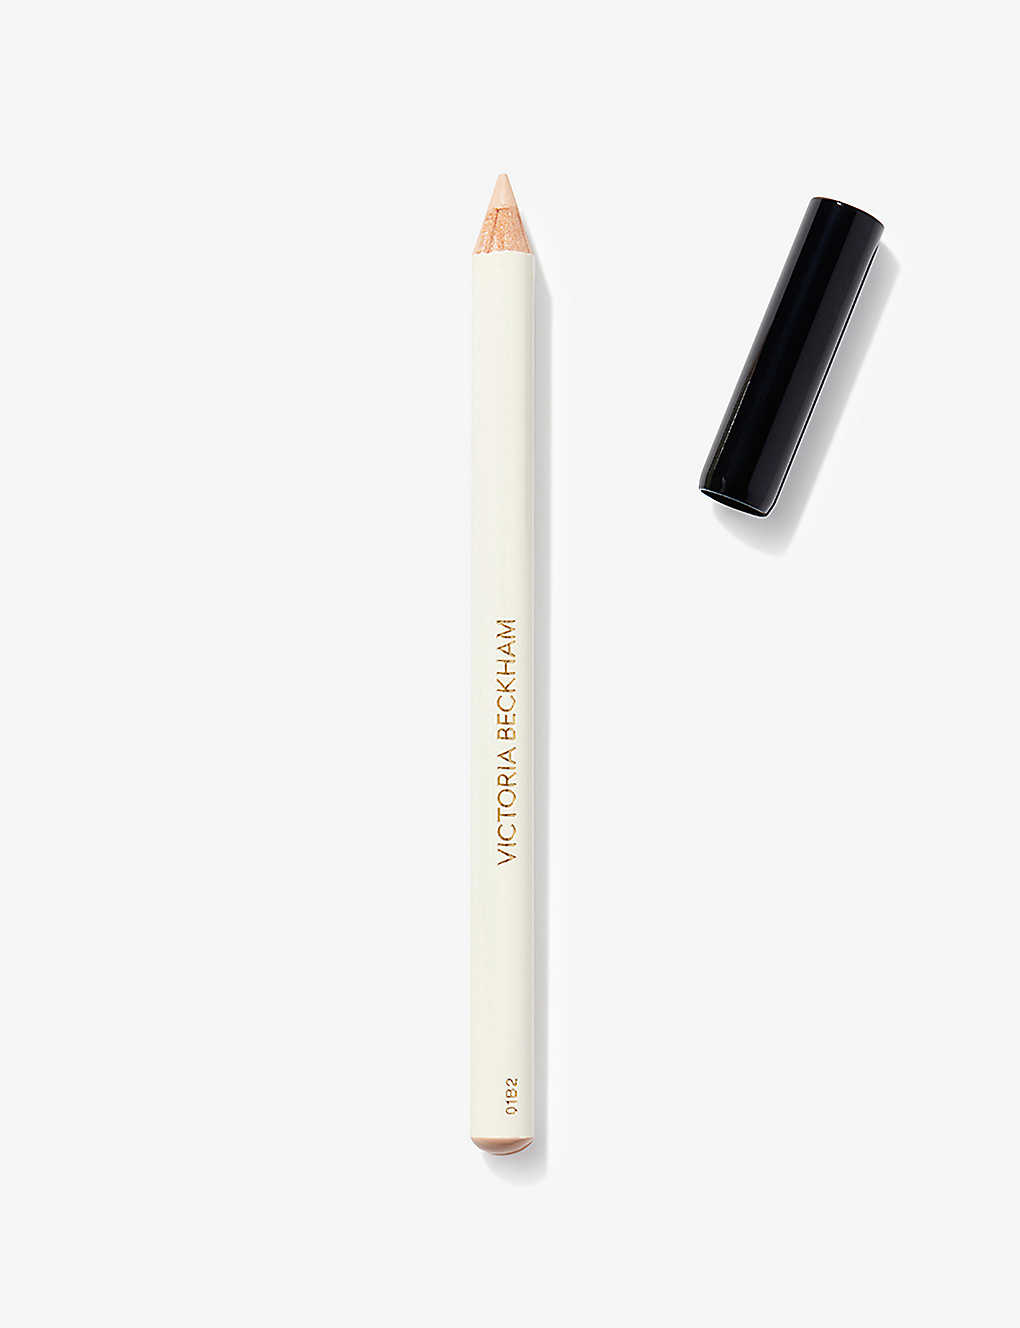 Victoria Beckham Beauty Neutral Instant Brightening Waterline Pencil 1.1g